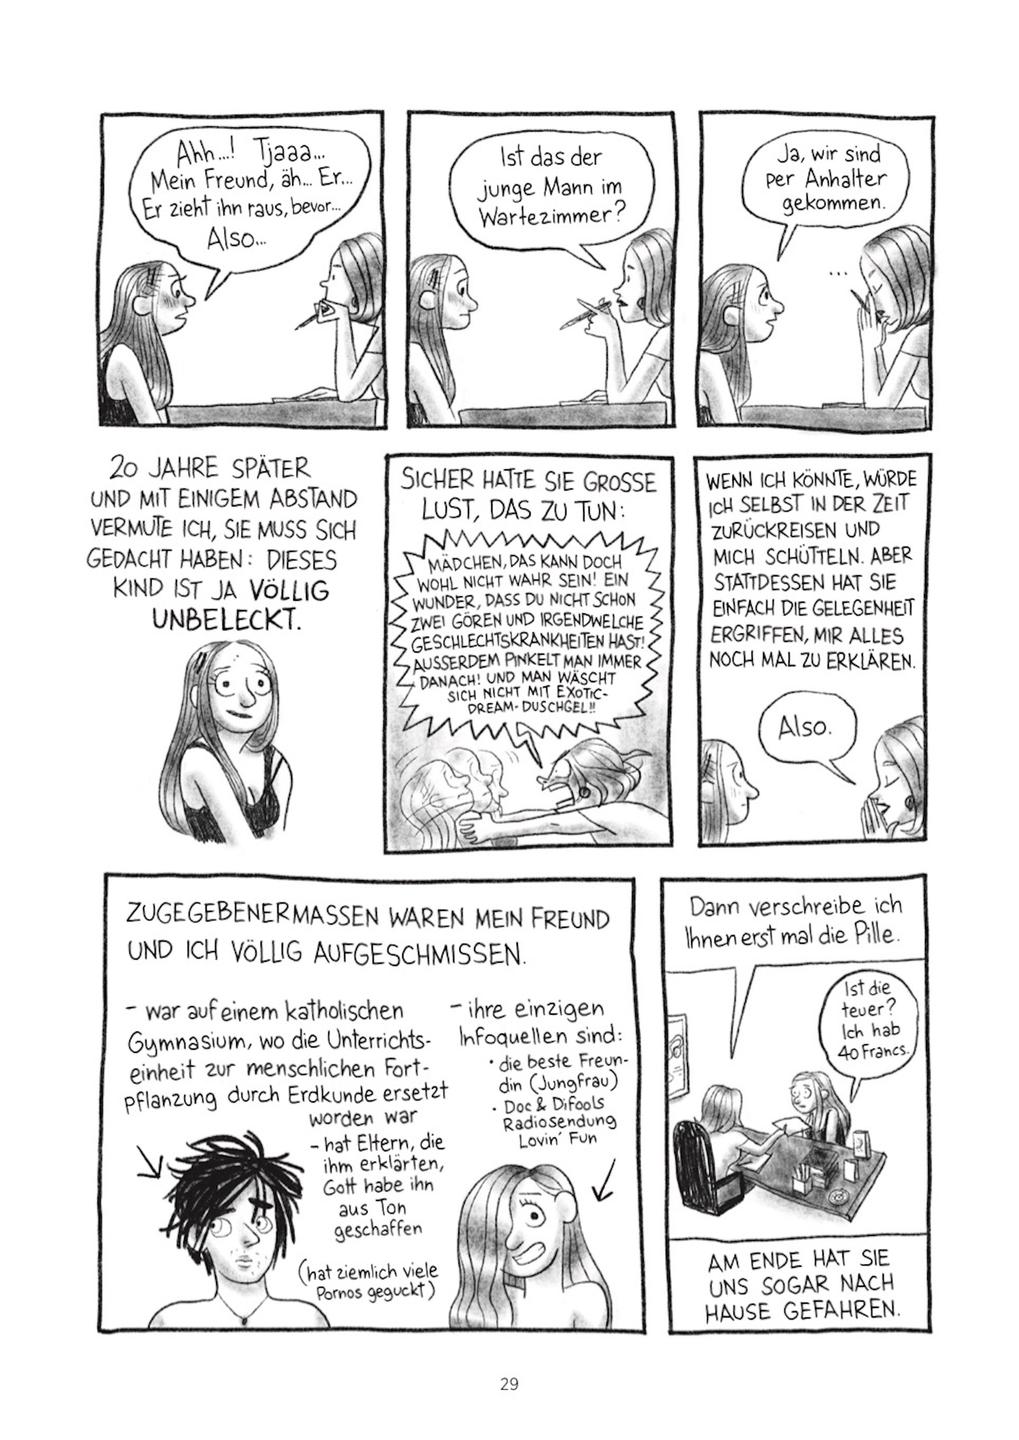 Seite 29 aus dem Comic Schichten von Pénélope Bagieu. Darin wird als Bildgeschichteeine Episode aus Ihrer Jugend erzählt: eine junge Frau im Aufklärungs-Gespräch mit ihrer Gynäkologin.